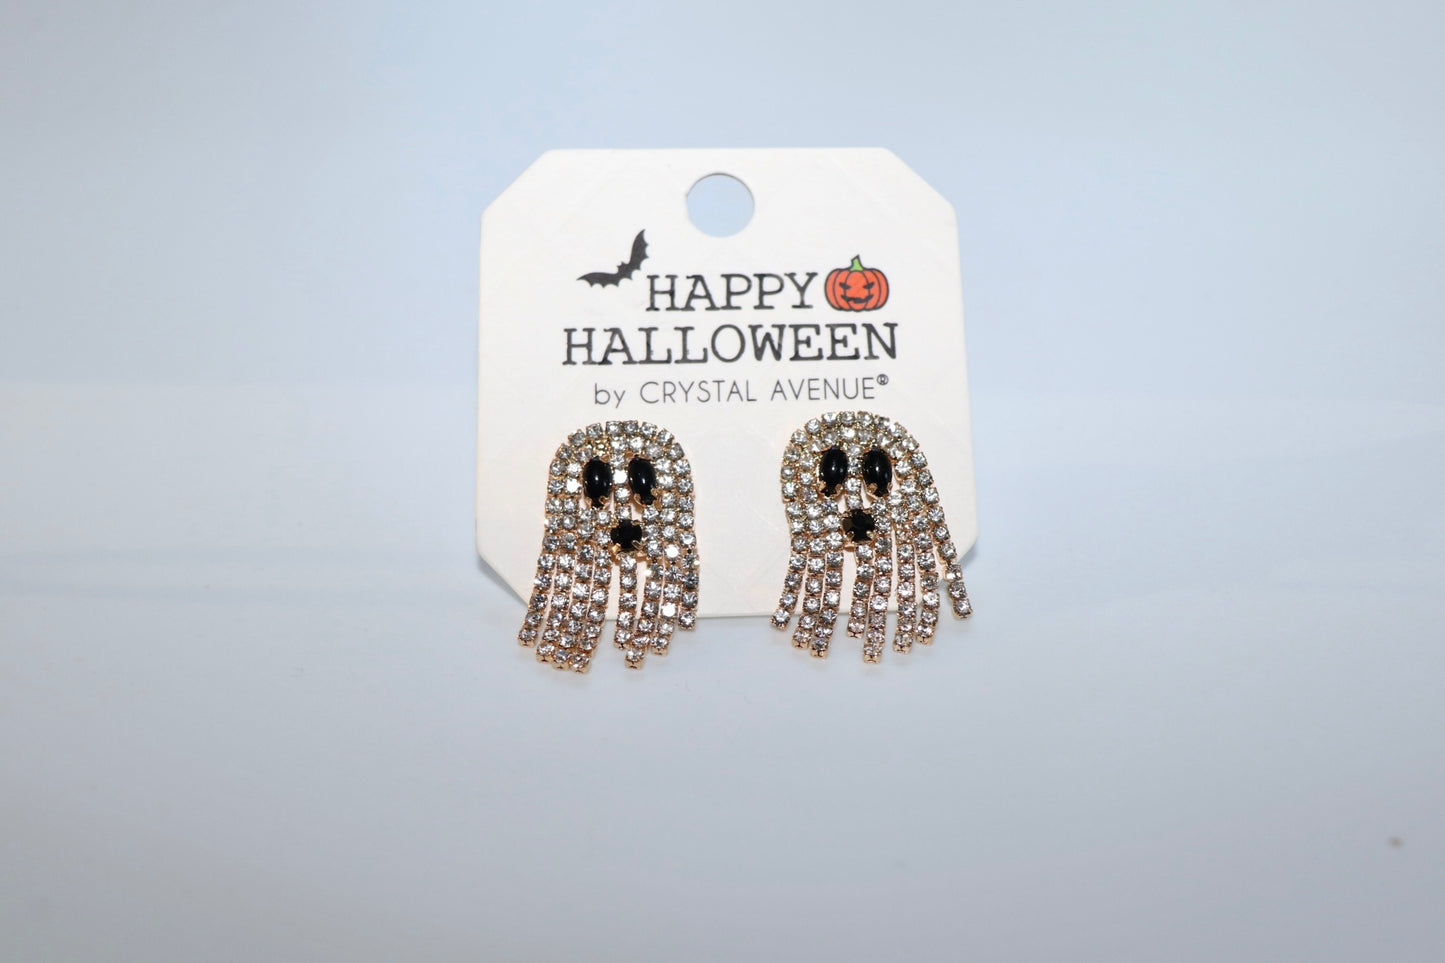 Spooky Season Earrings